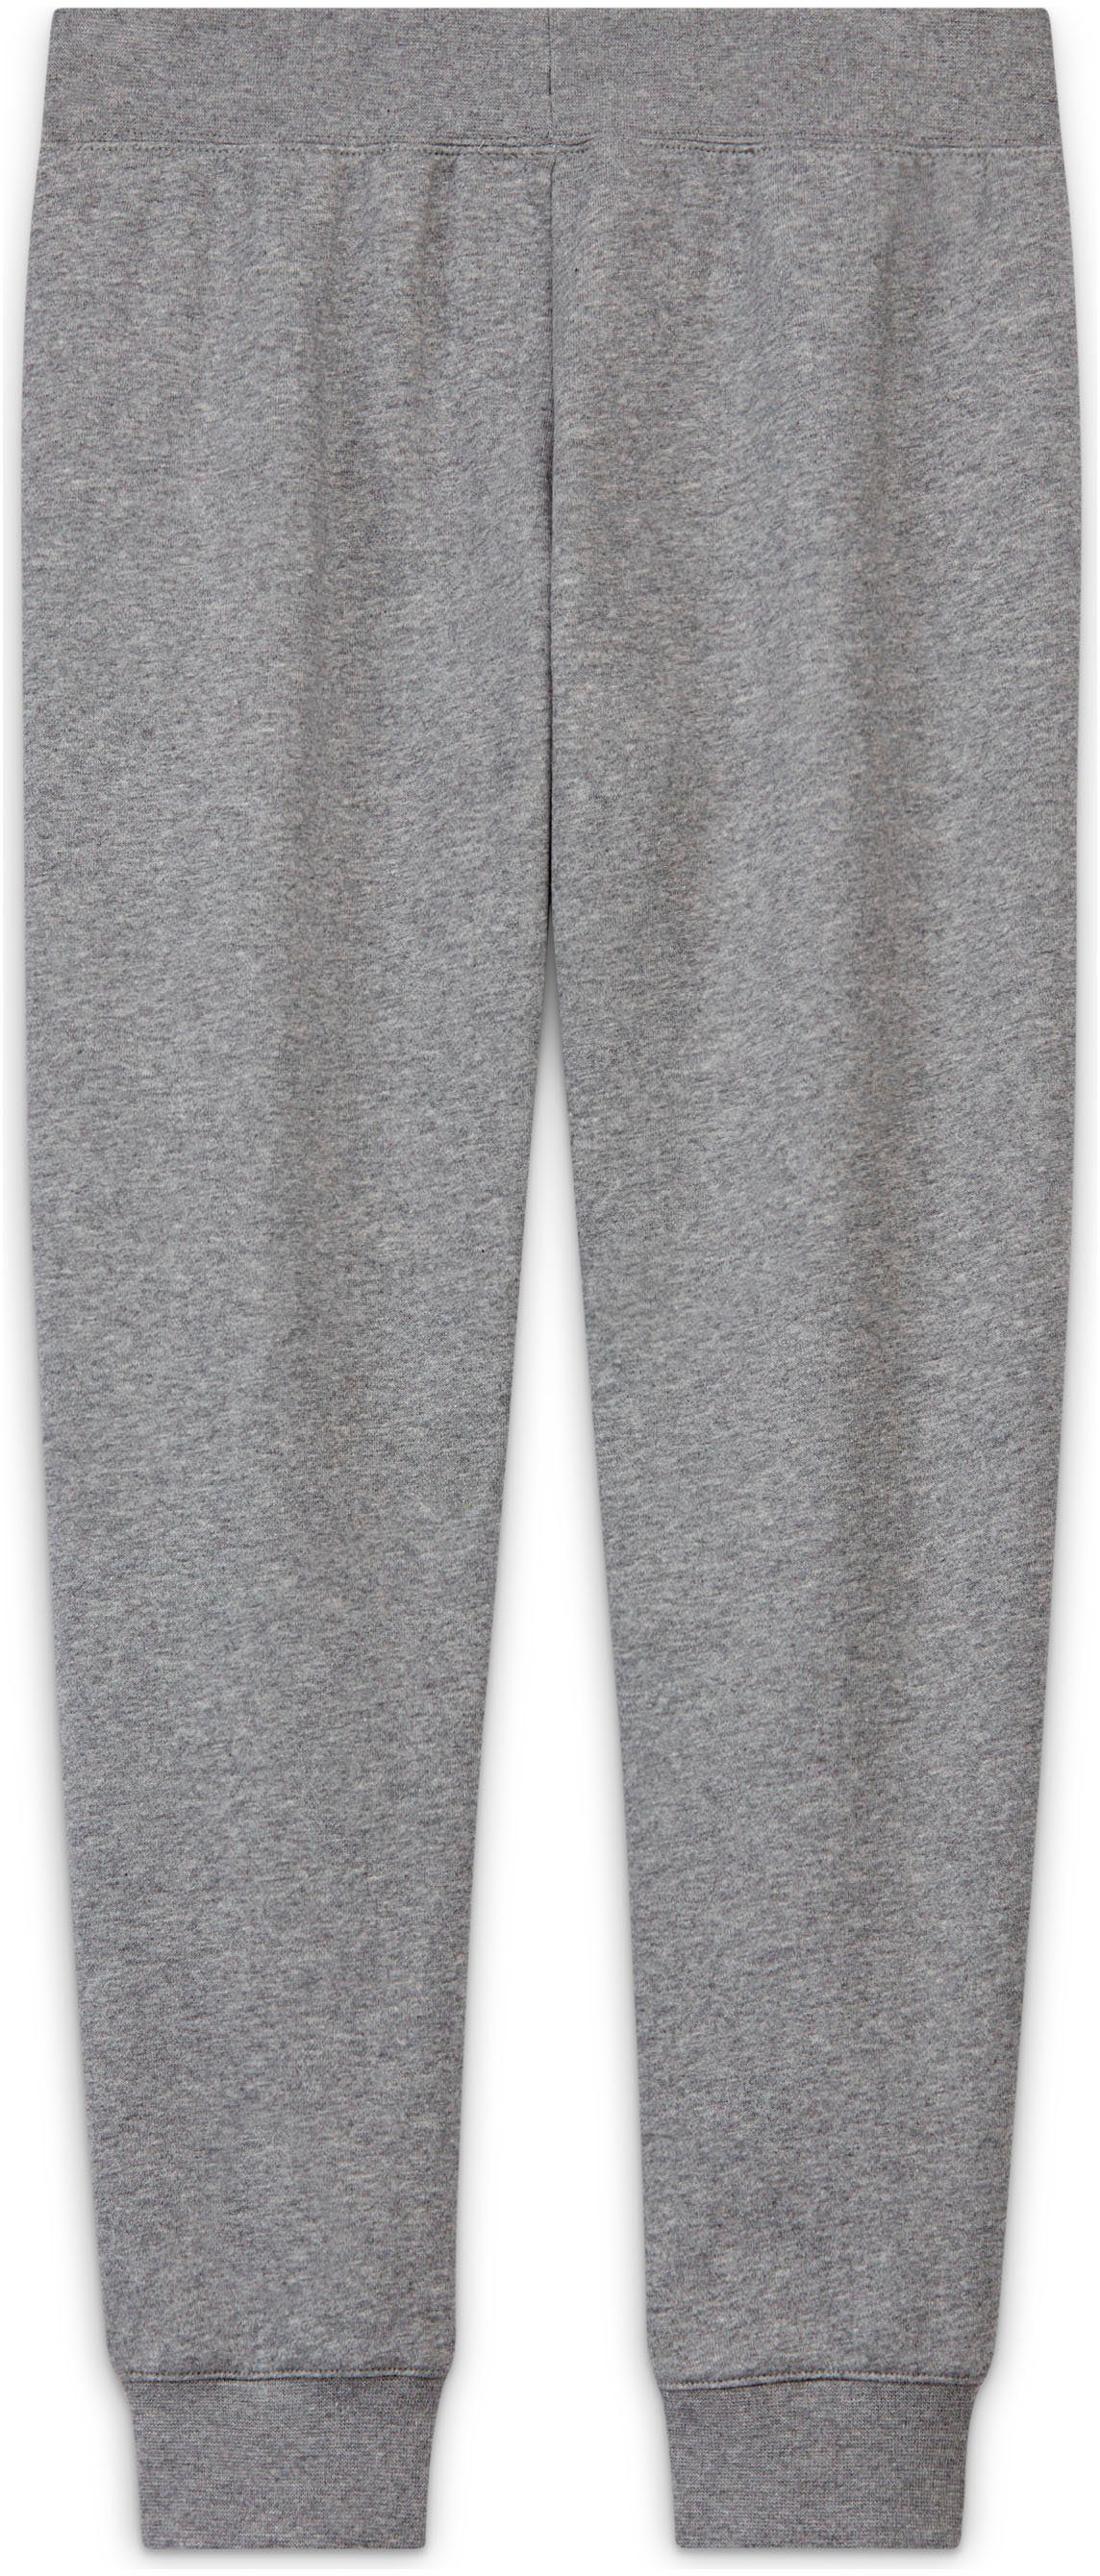 Big Club Sportswear (Girls) grau-meliert Jogginghose Nike Kids' Fleece Pants